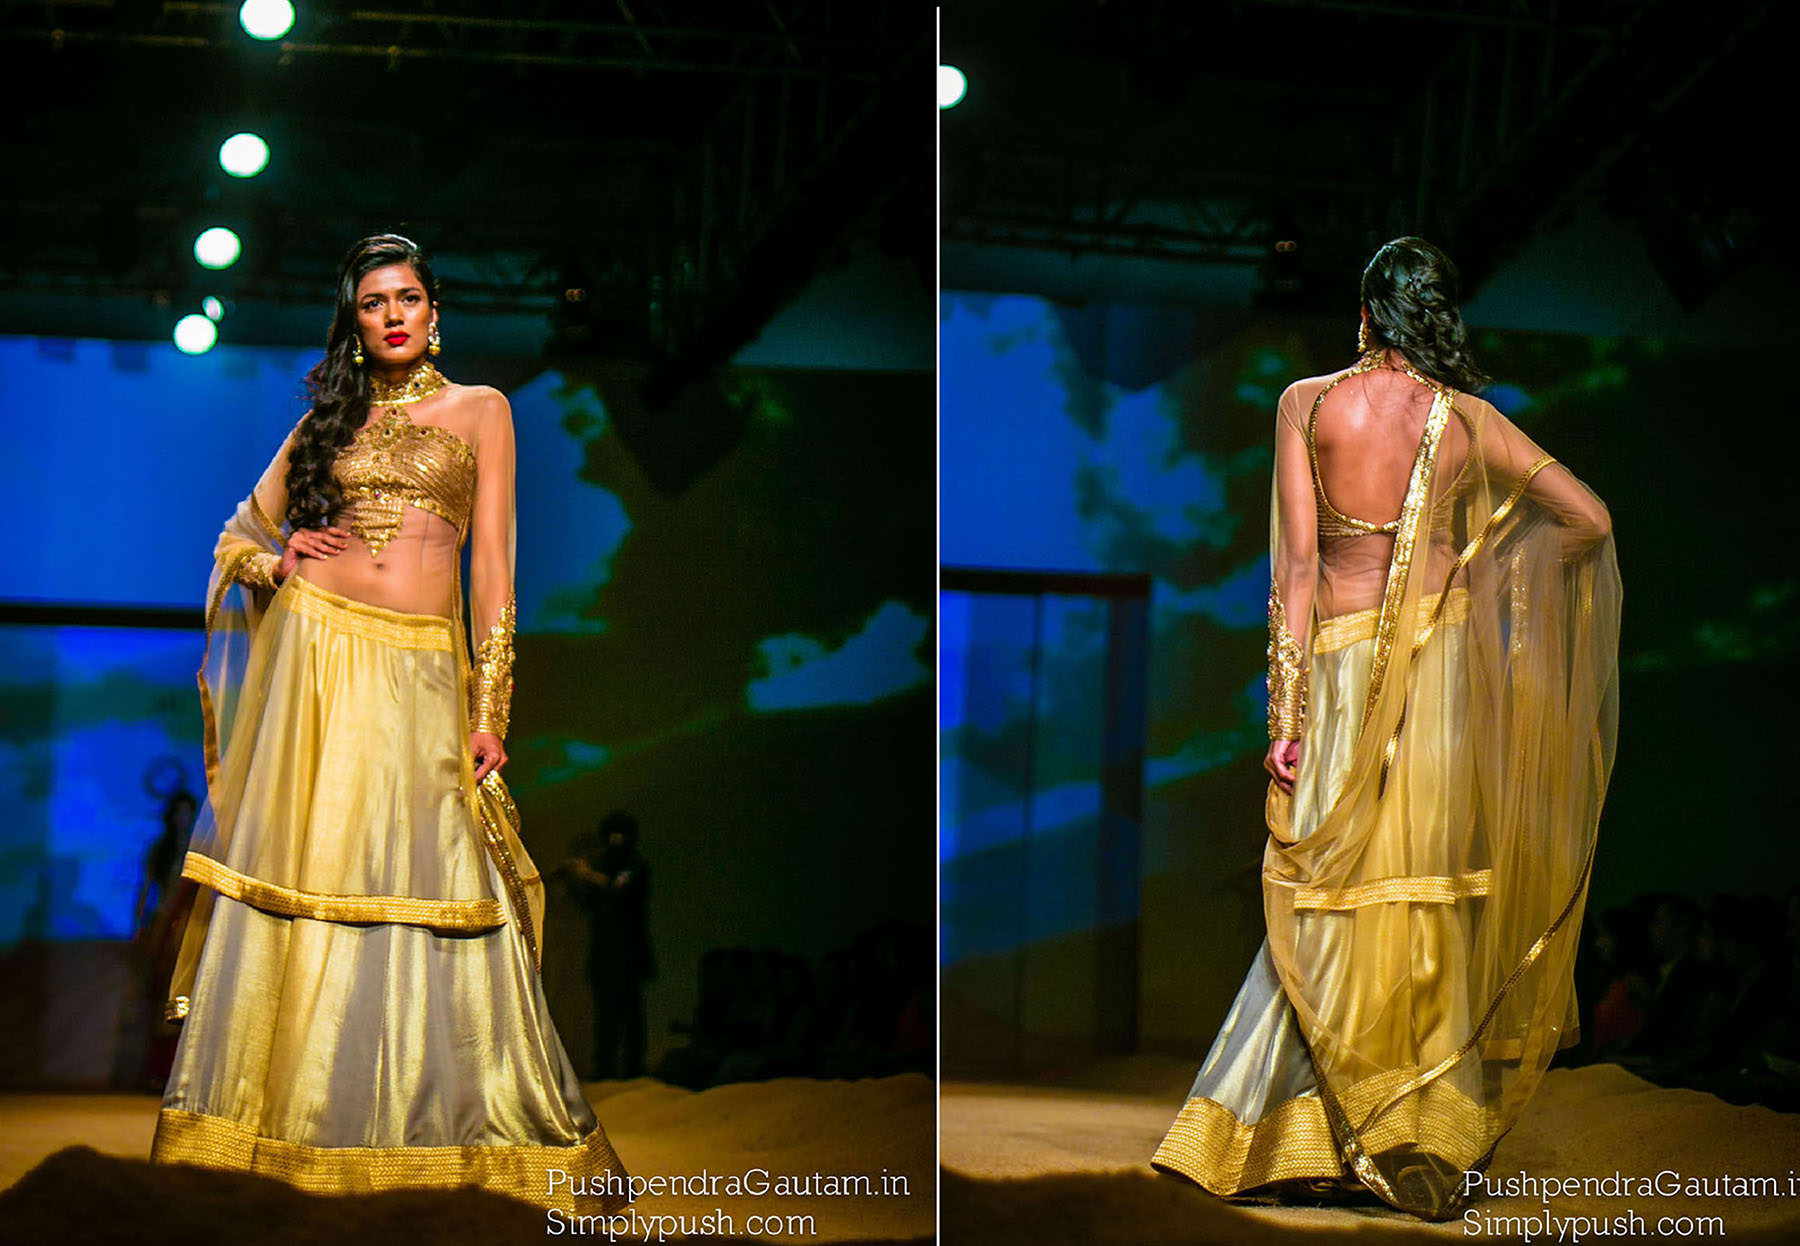 Ashima-Leena-bmw-india-bridal-fashion-week-pushpendragautam-pics-event-photographer-india